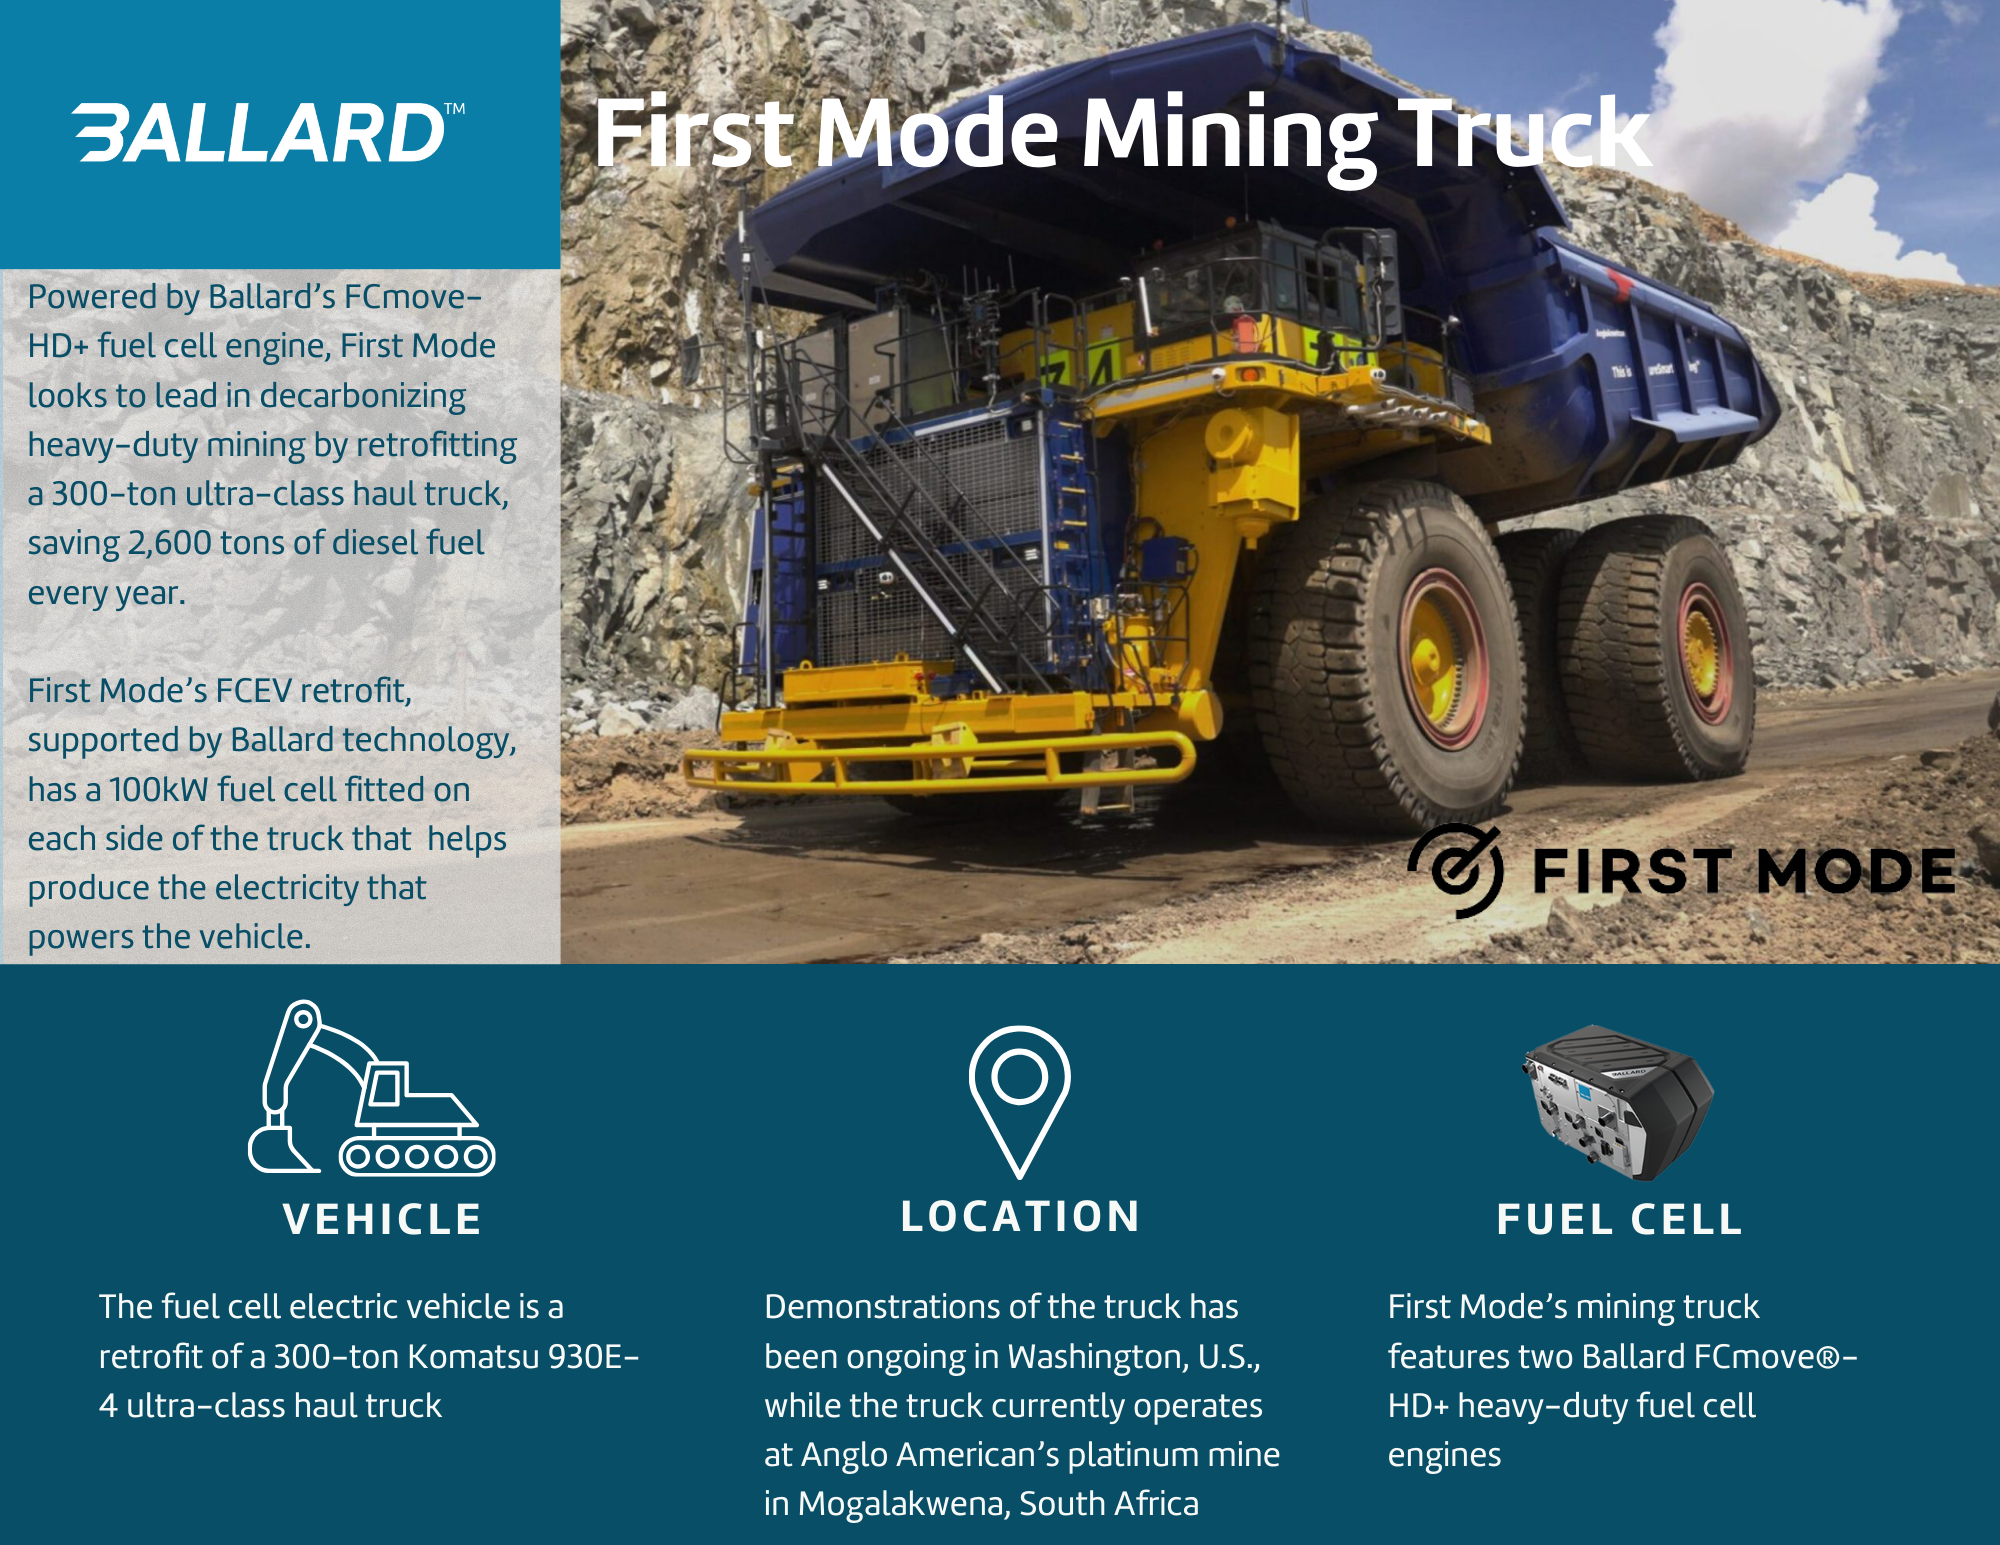 First Mode mining truck